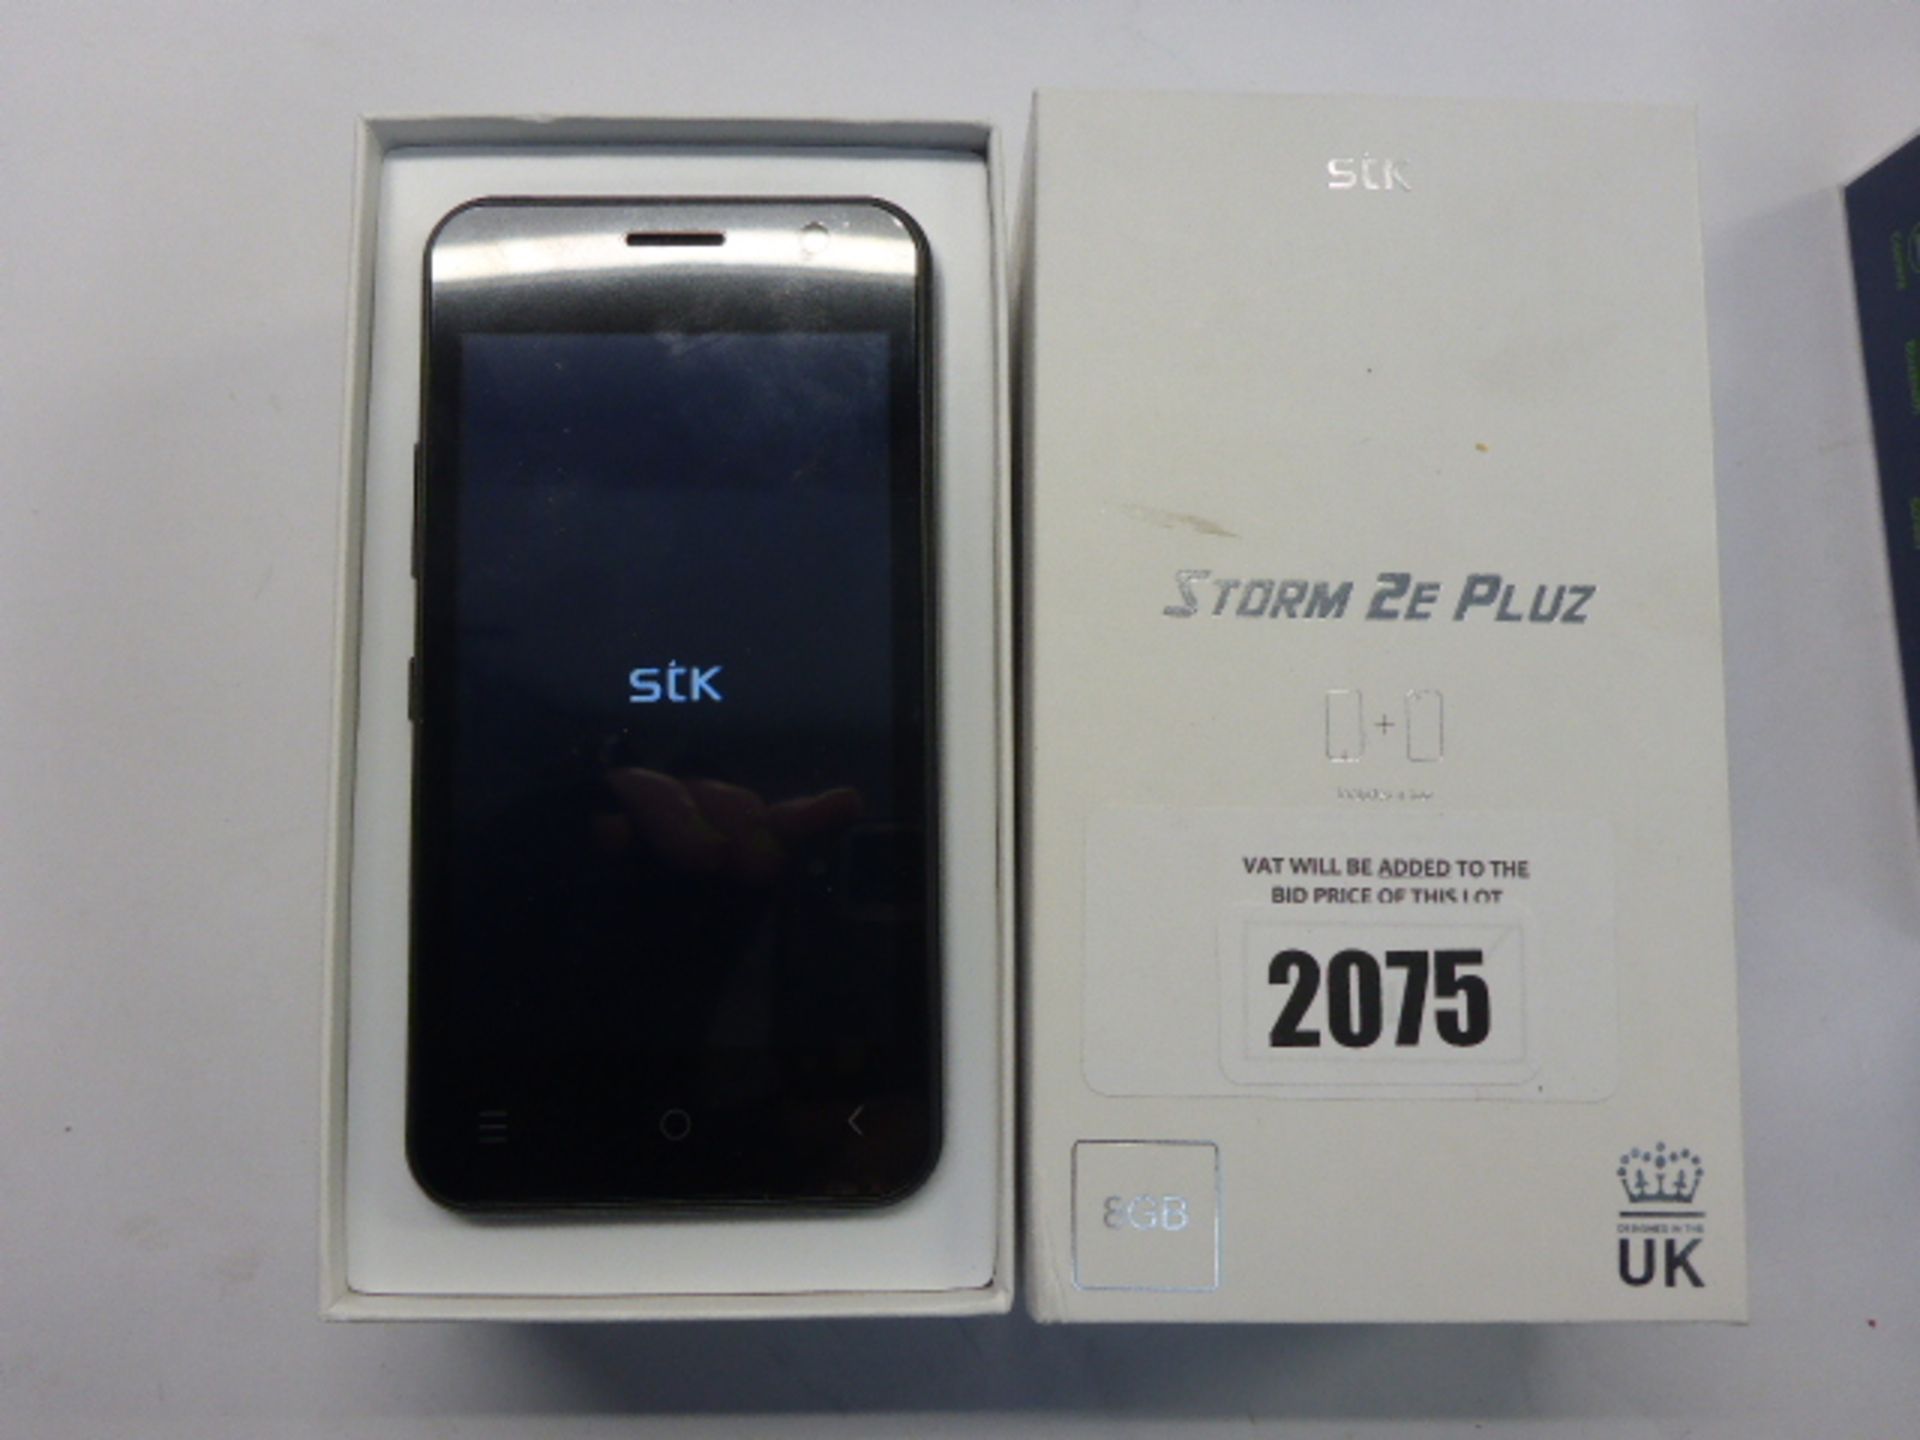 Storm 2E Pluz 8GB android smartphone in box